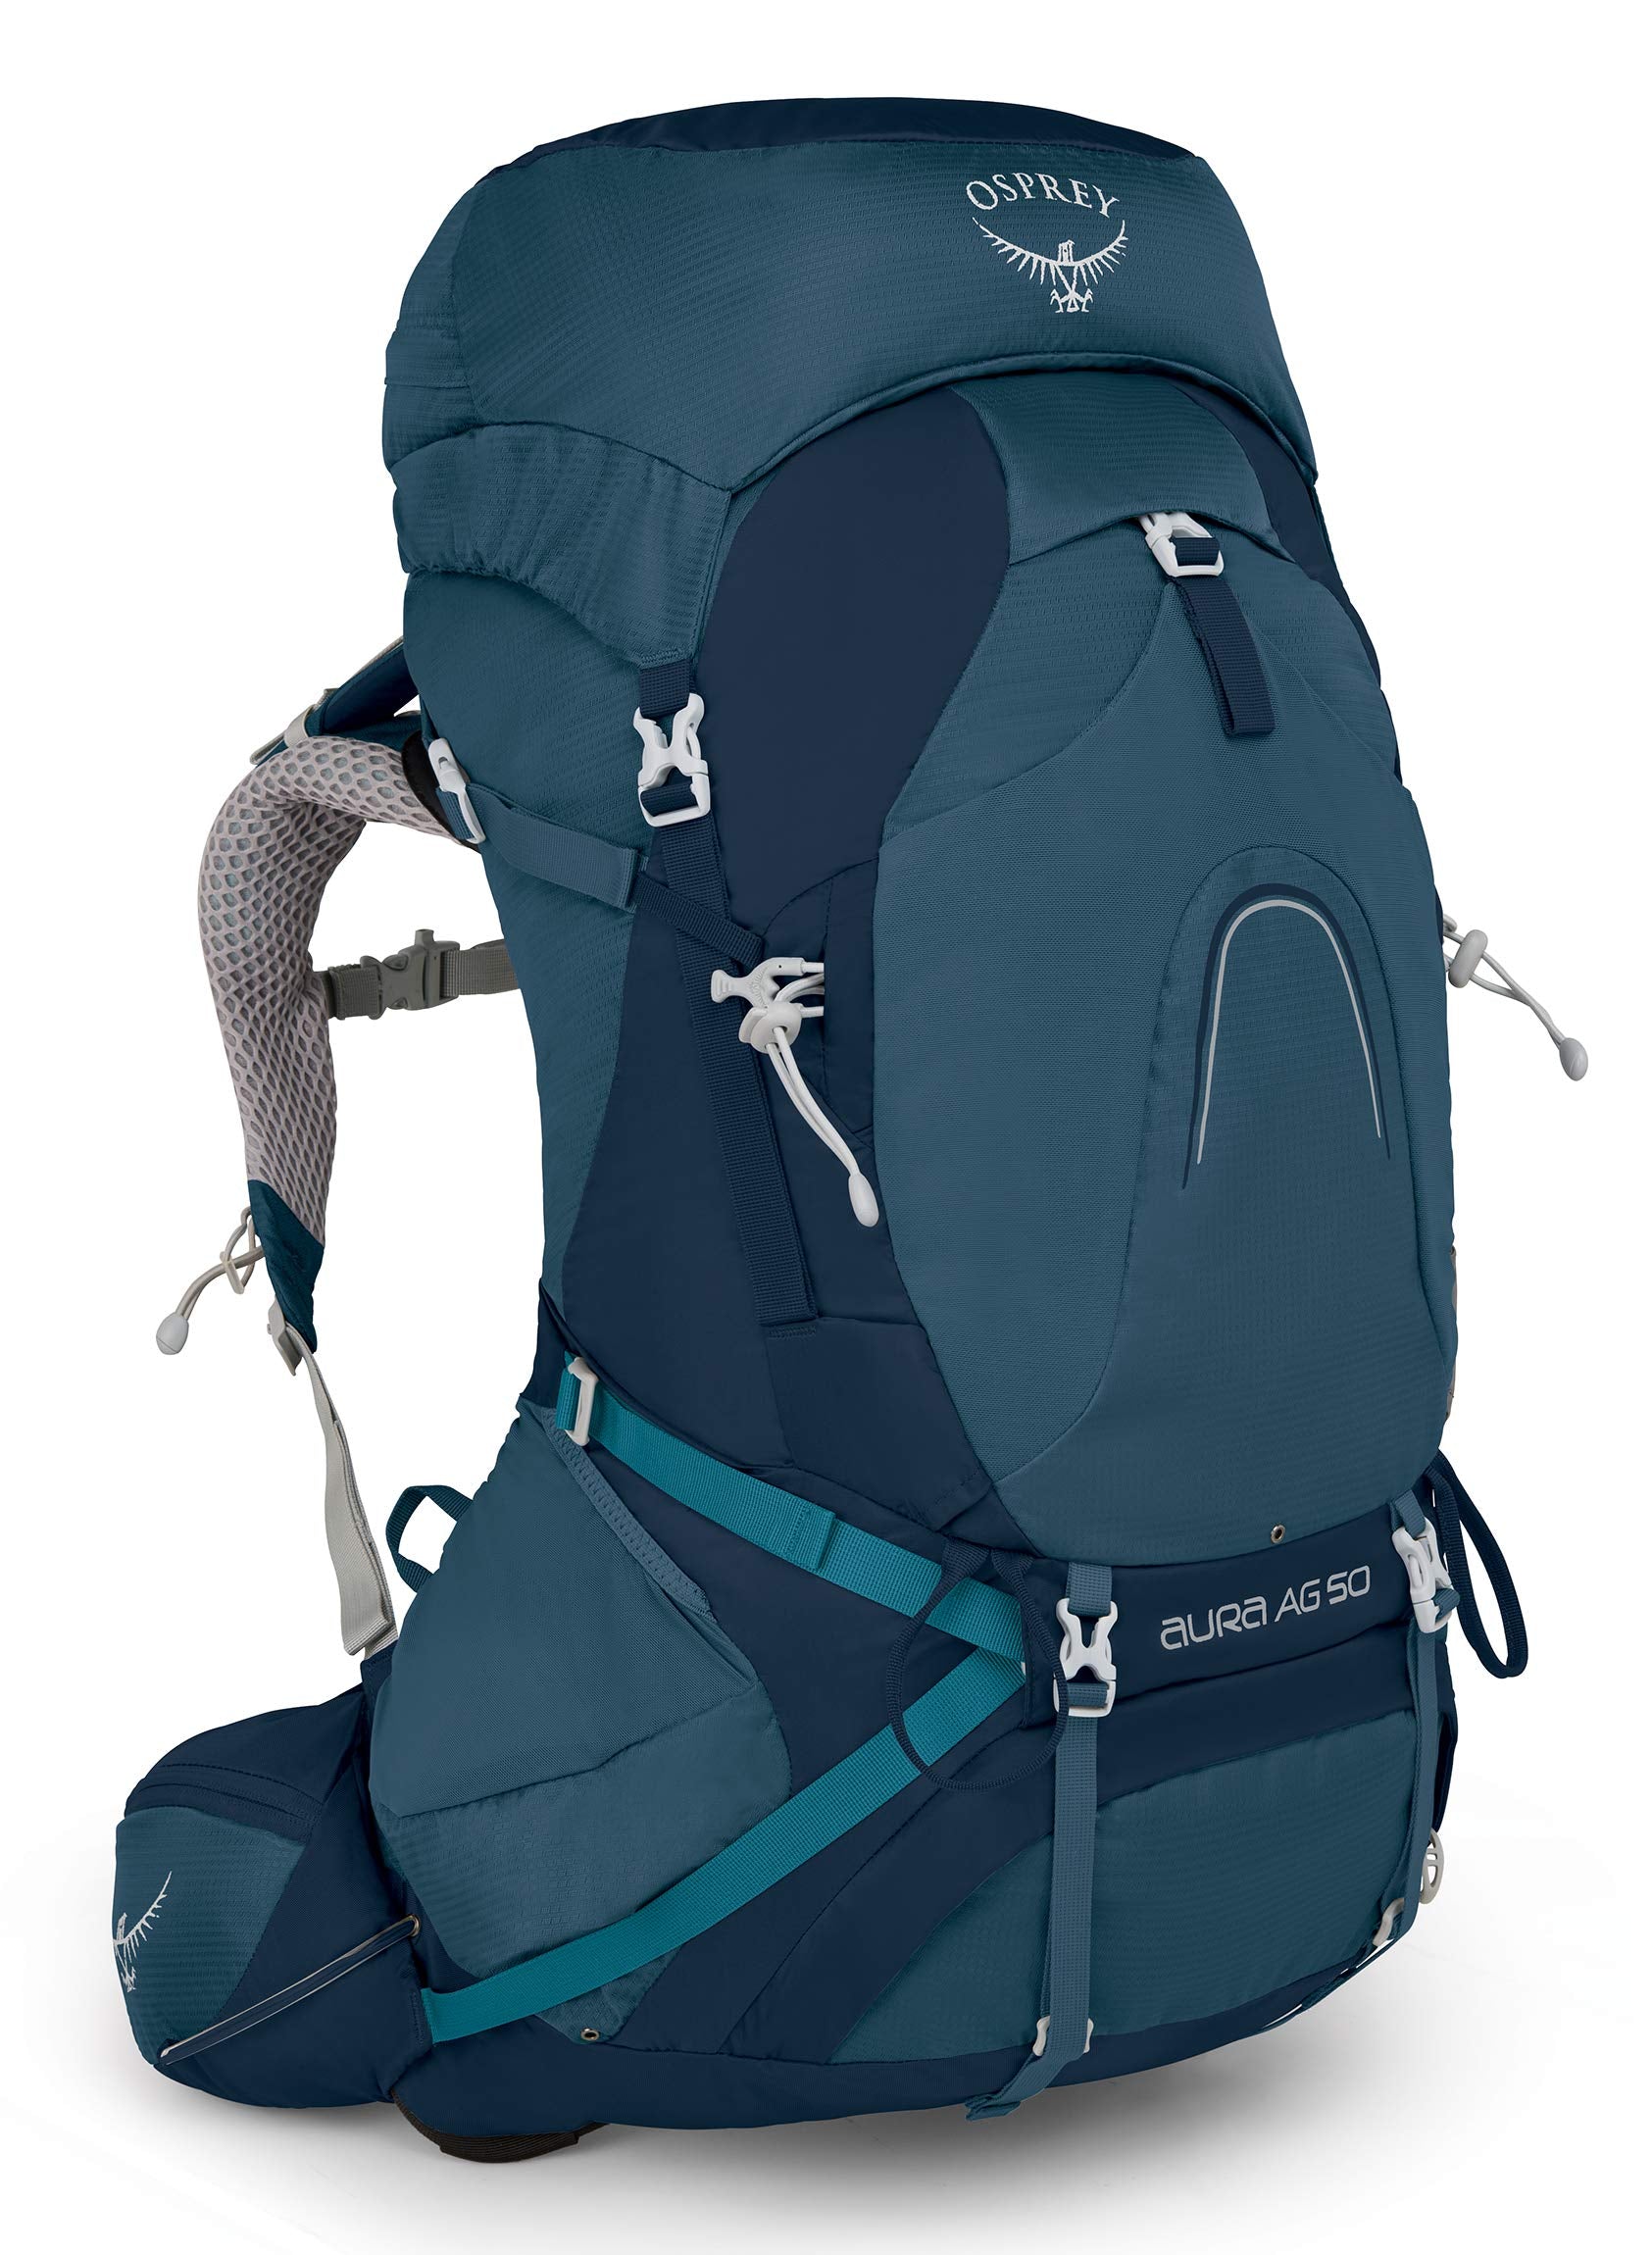 Osprey Aura AG 50 Women's Backpacking Backpack  - Like New